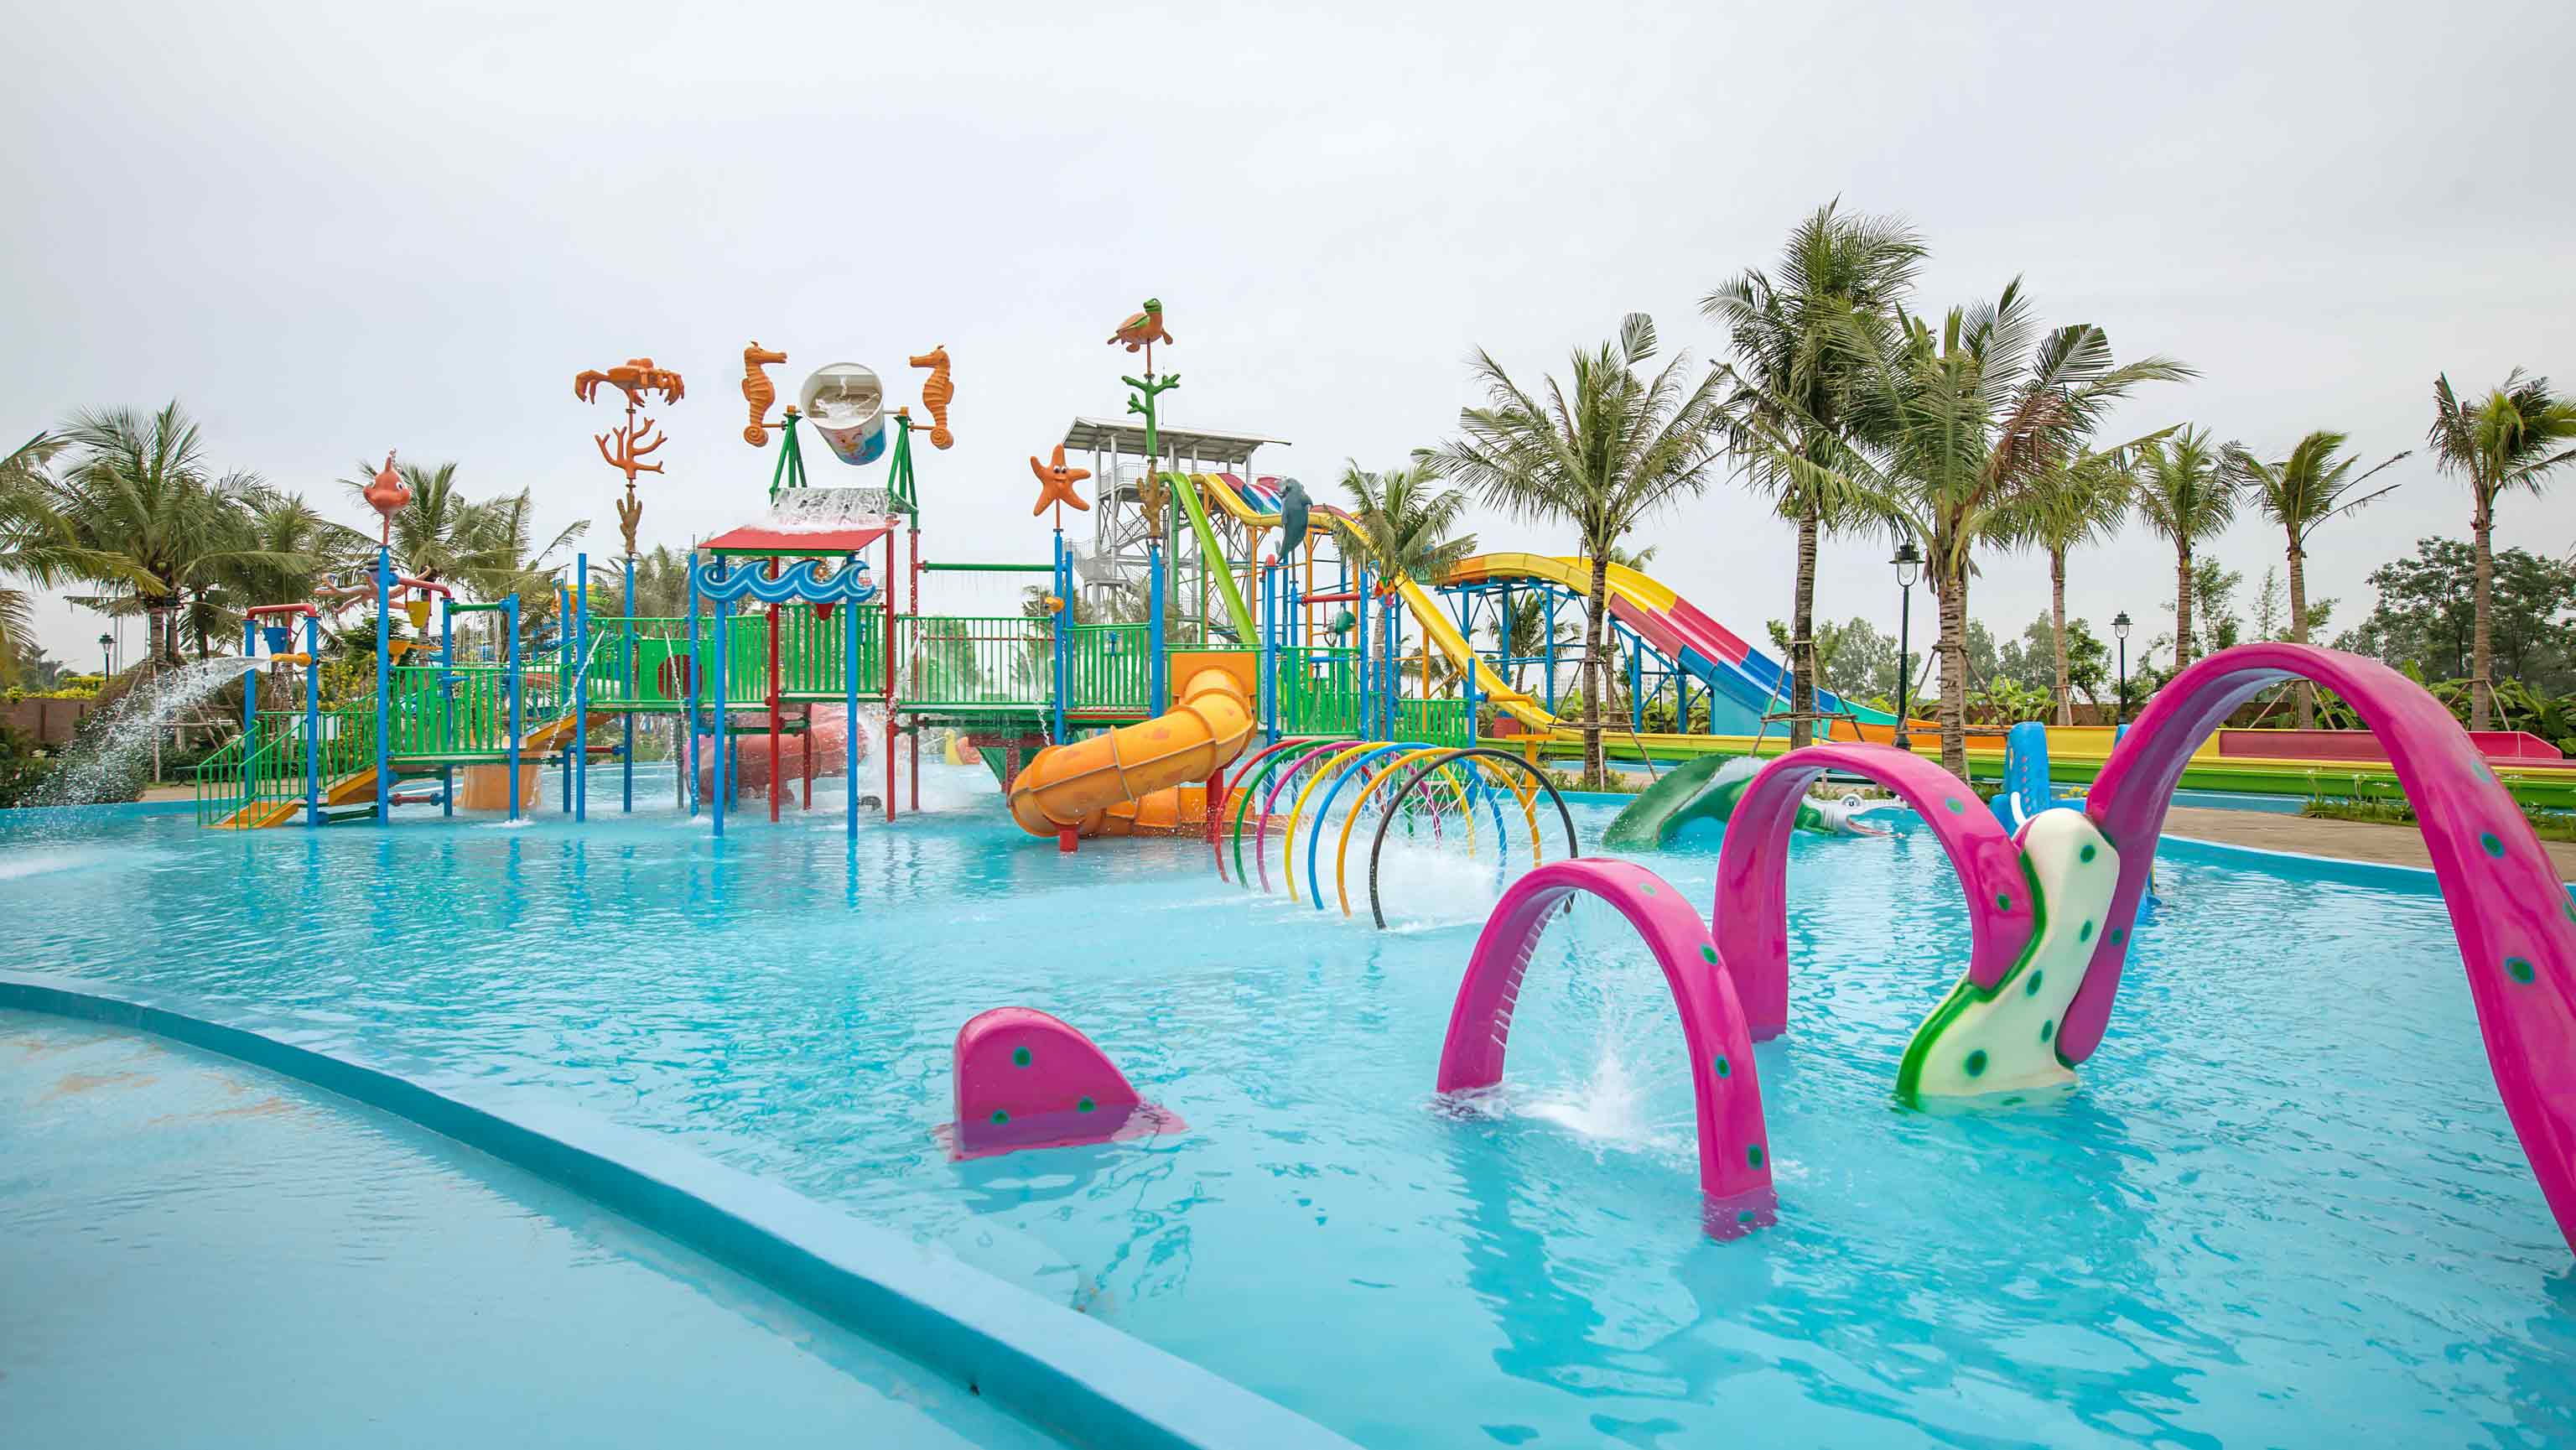 Baara Land children's pool